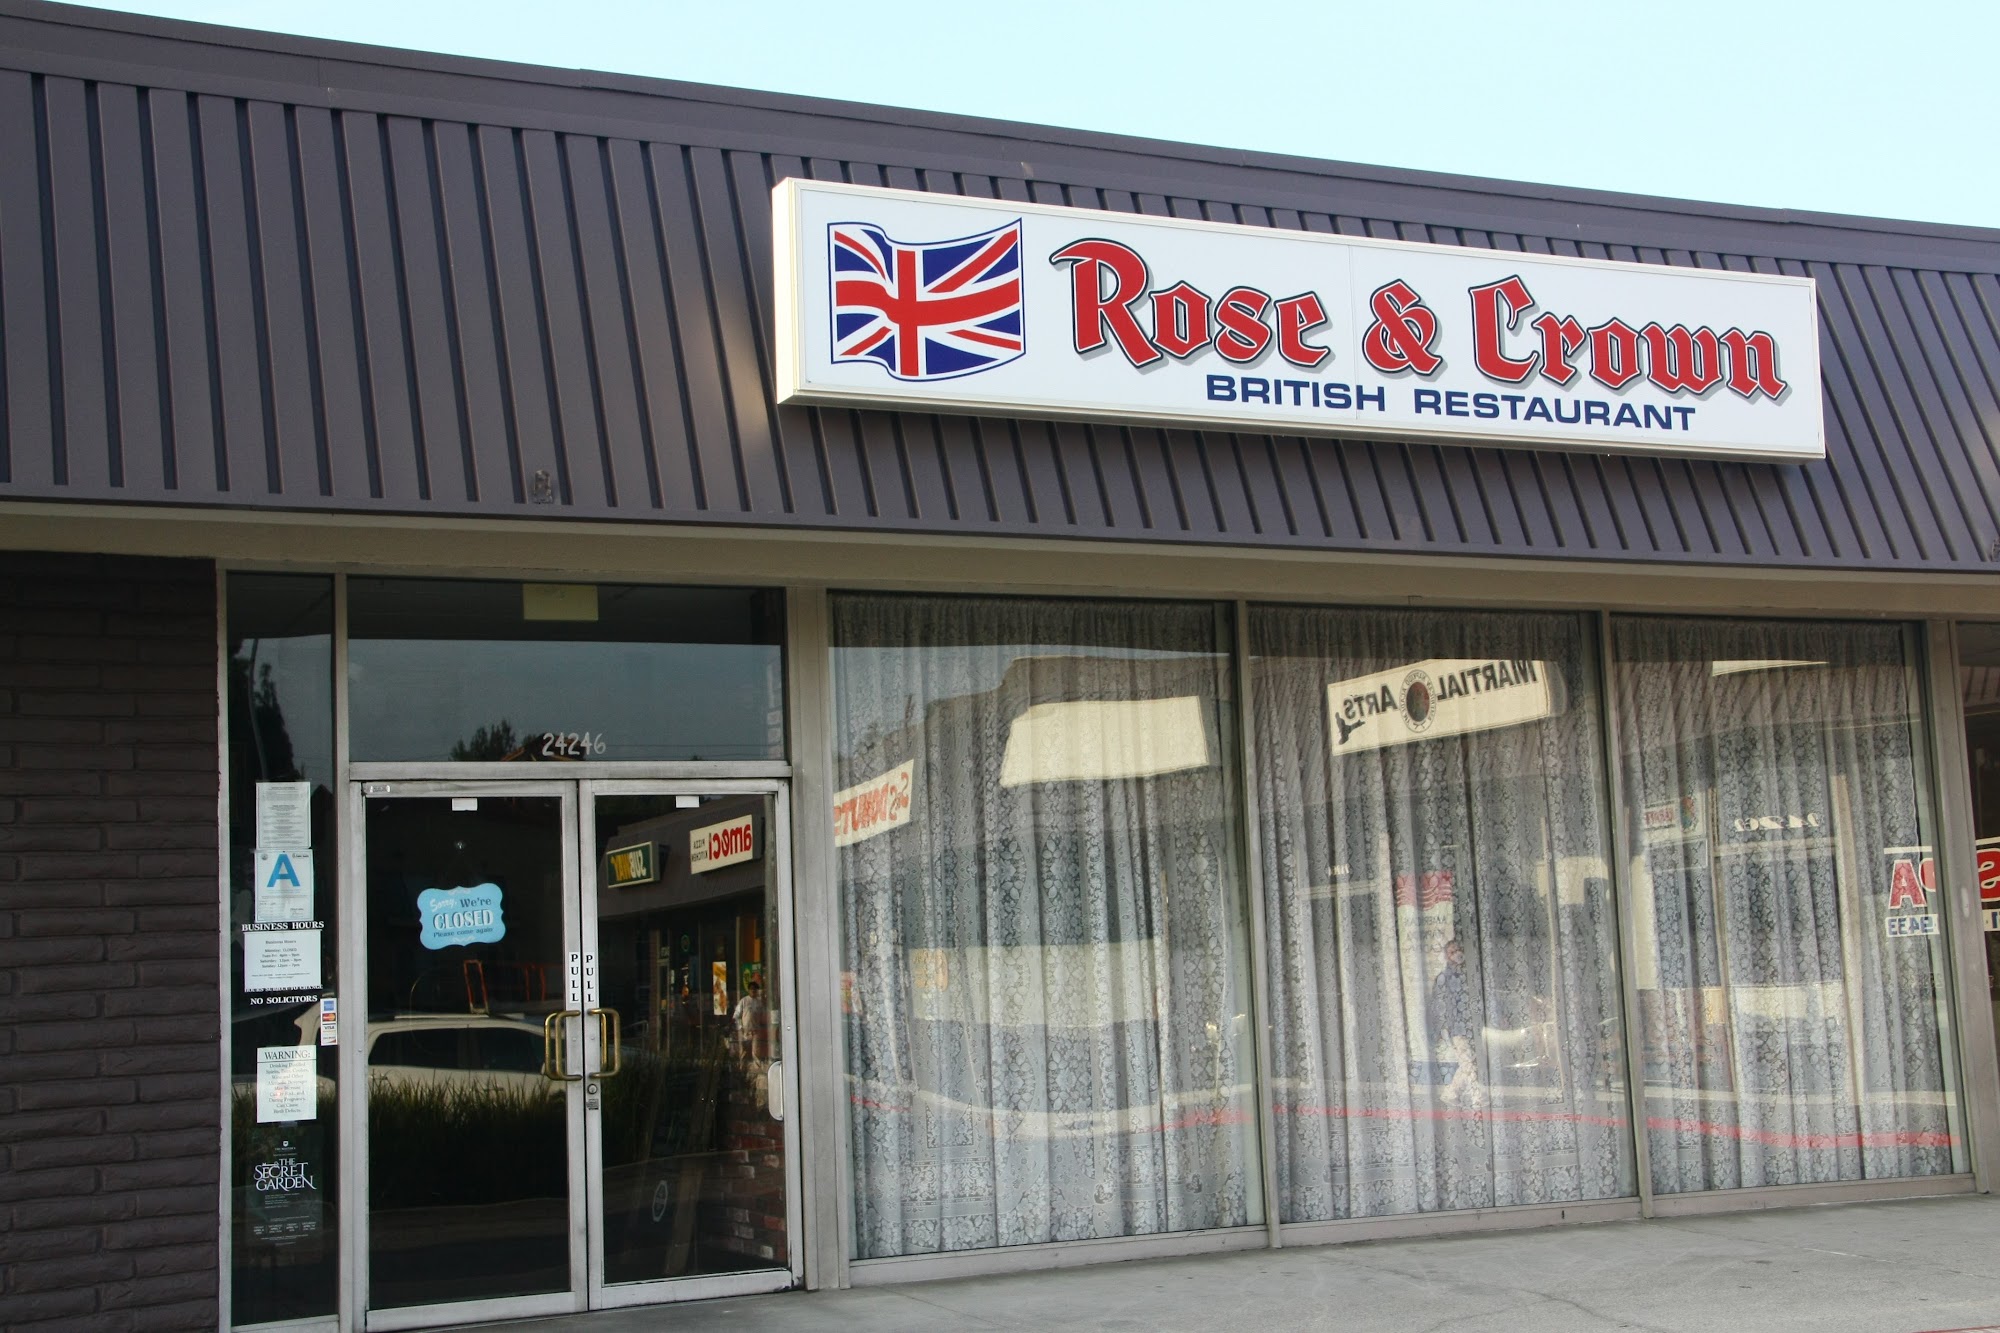 Rose & Crown British Restaurant